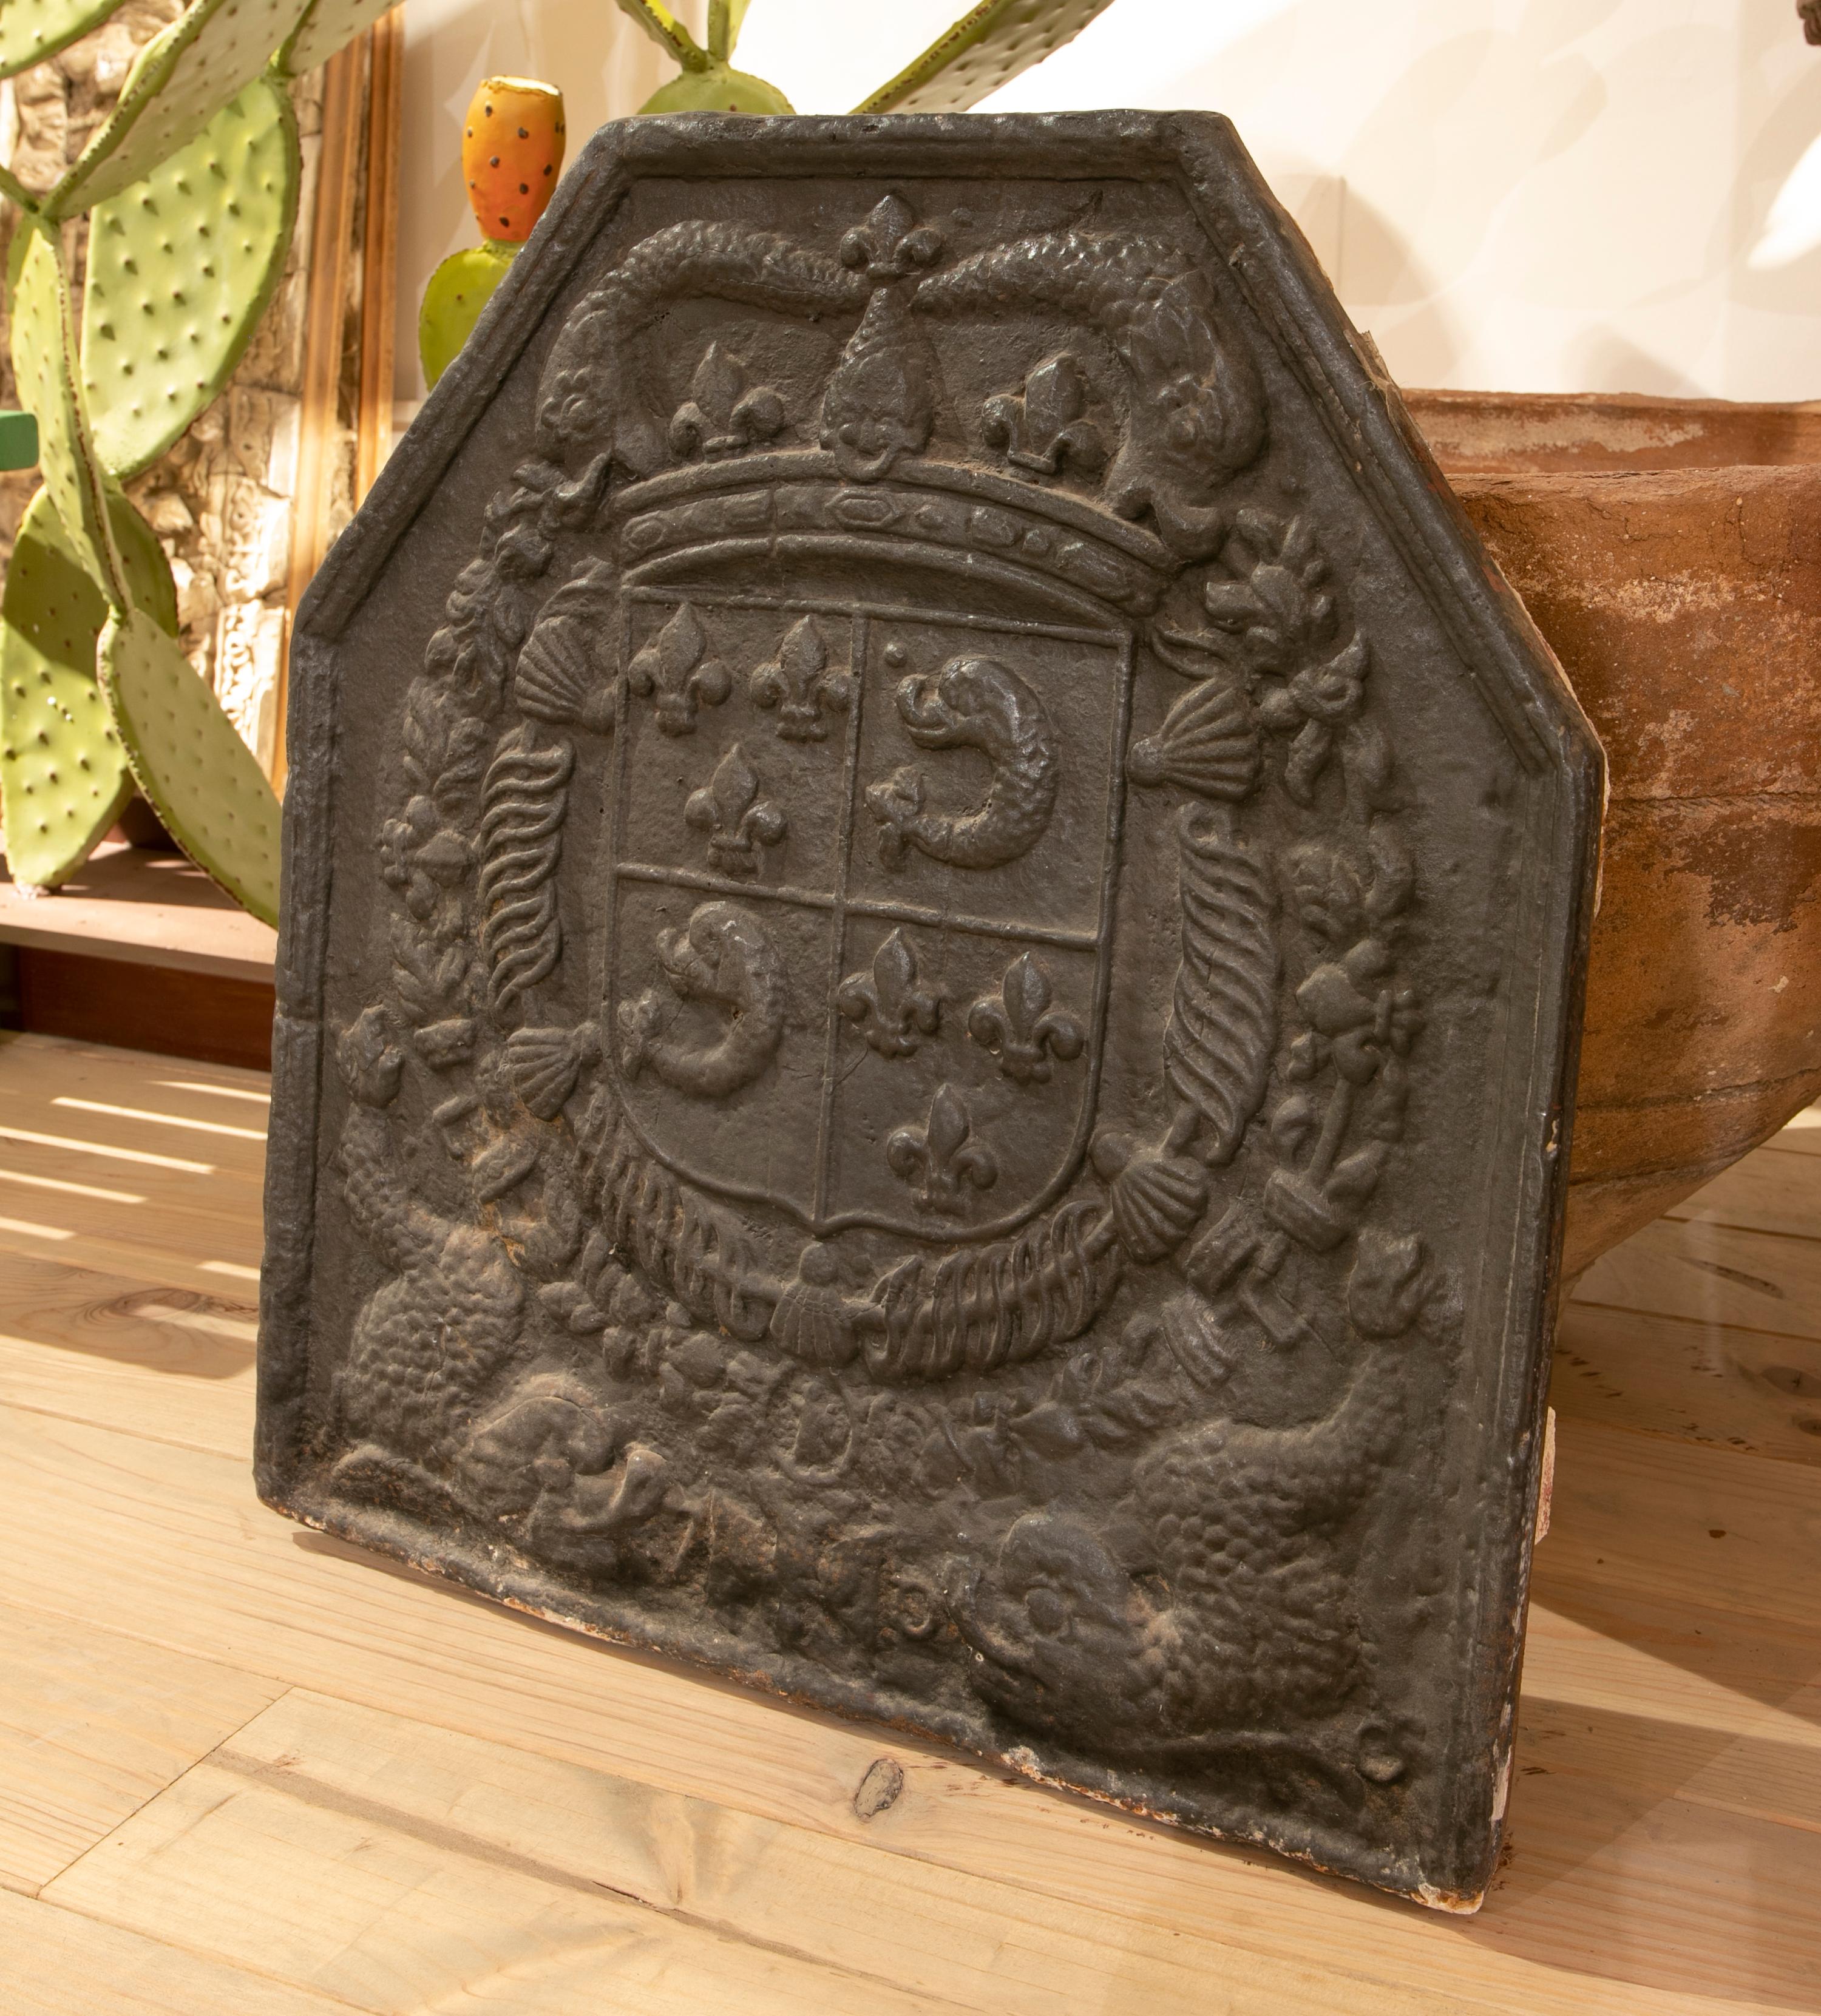 plaque de cheminée en fonte espagnole des années 1850 avec armoiries héraldiques en relief avec emblèmes de la couronne et de la fleur de lys.
 